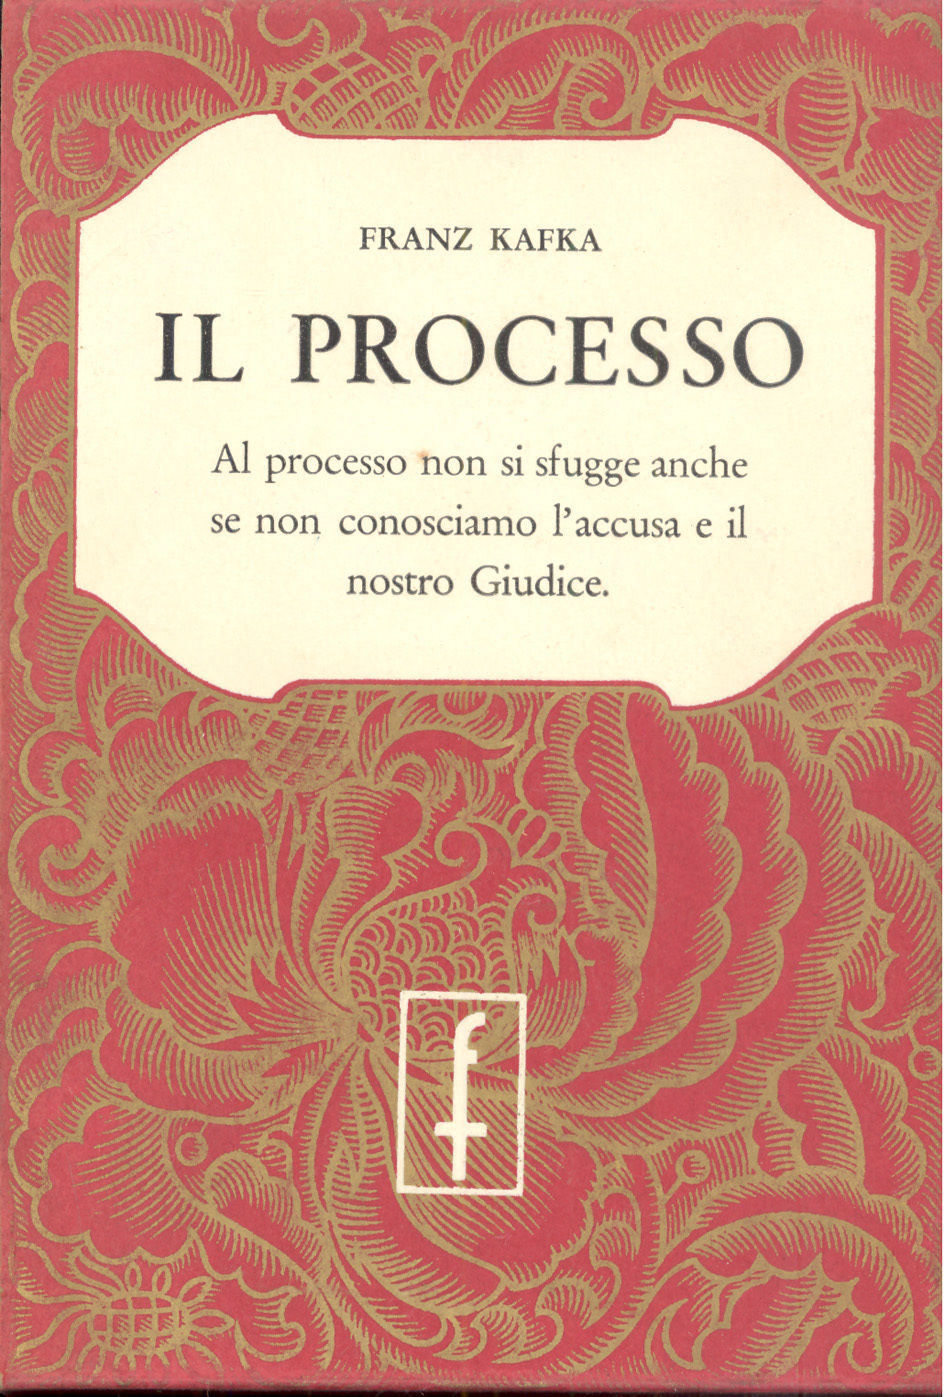 Il processo (Der Prozess) di Franz Kafka – Edizioni Frassinelli 1957 e 1968